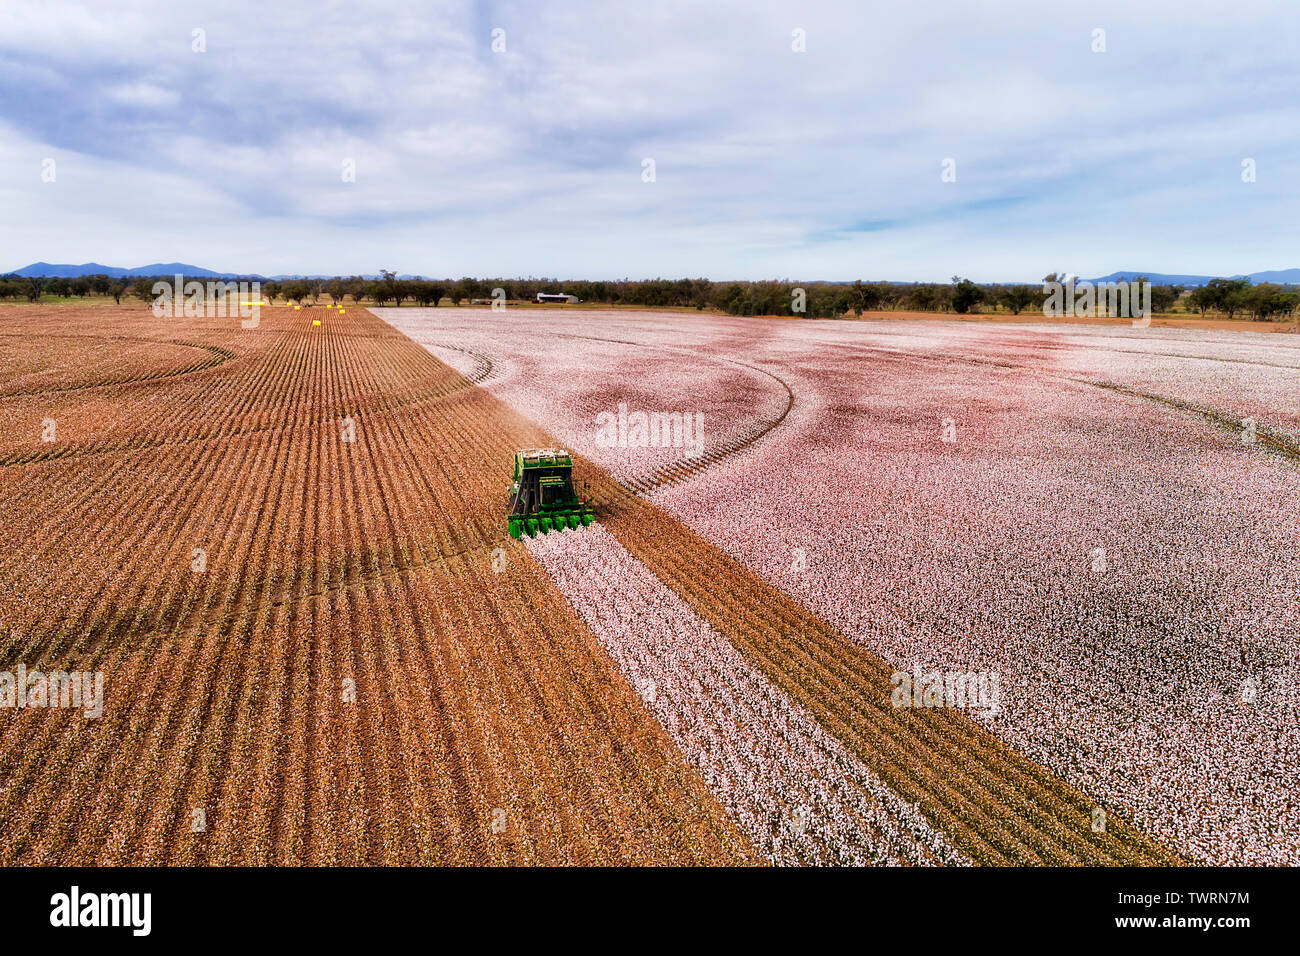 Flache angebauten landwirtschaftlichen Bereichen Australien unter Baumwolle pflanzen während der Ernte mit Mähdrescher Traktor Kommissionierung weißen Schnee Baumwolle Safe Stockfoto